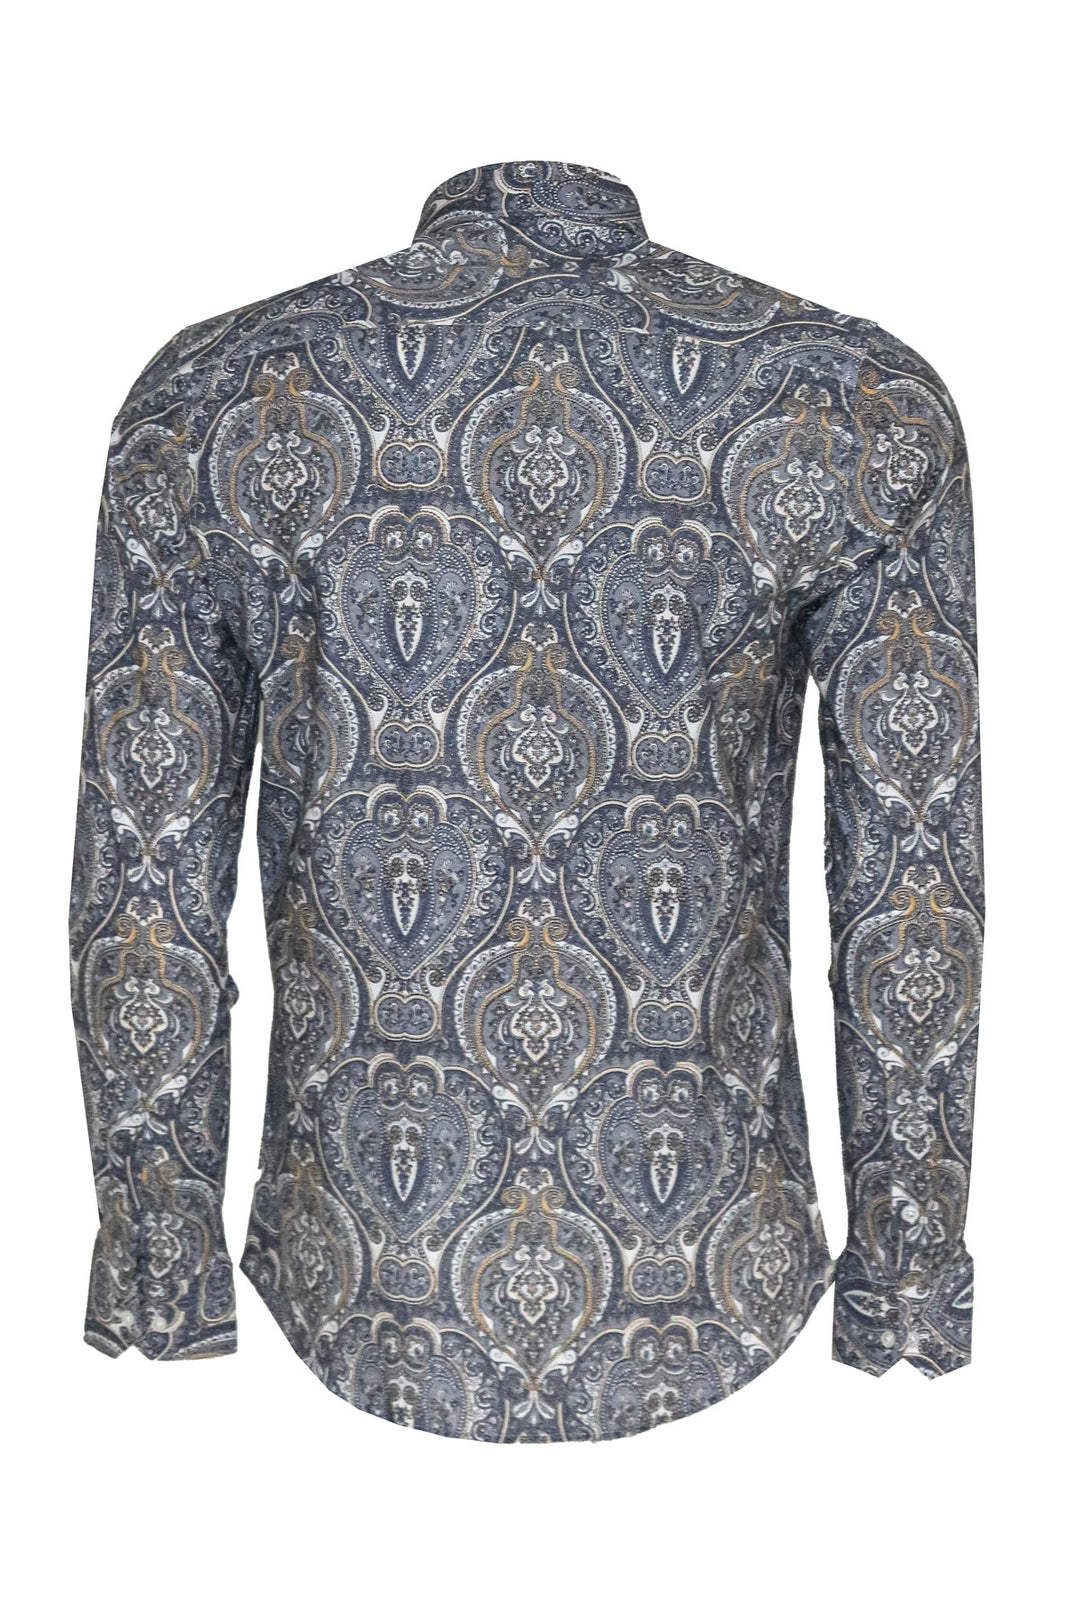 Damask Pattern Blue Slim Fit Shirt - Wessi